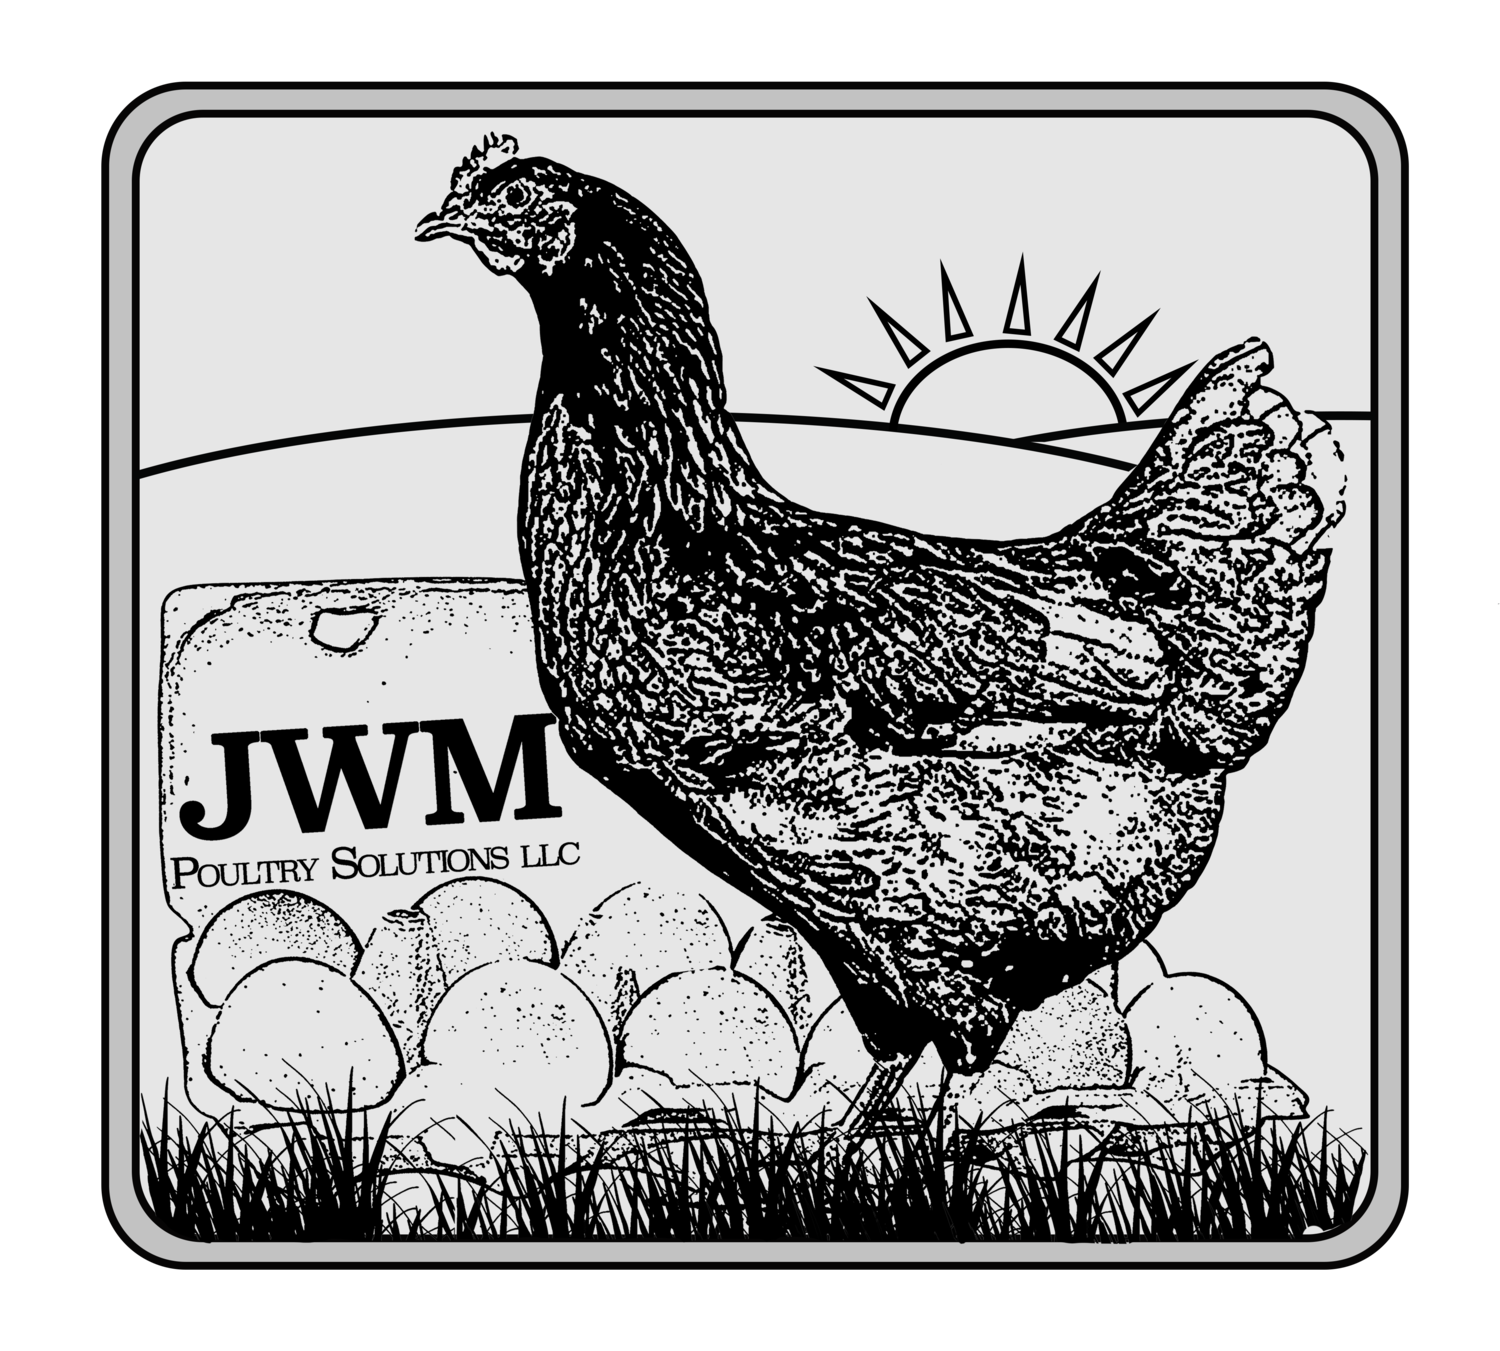 JWM Poultry